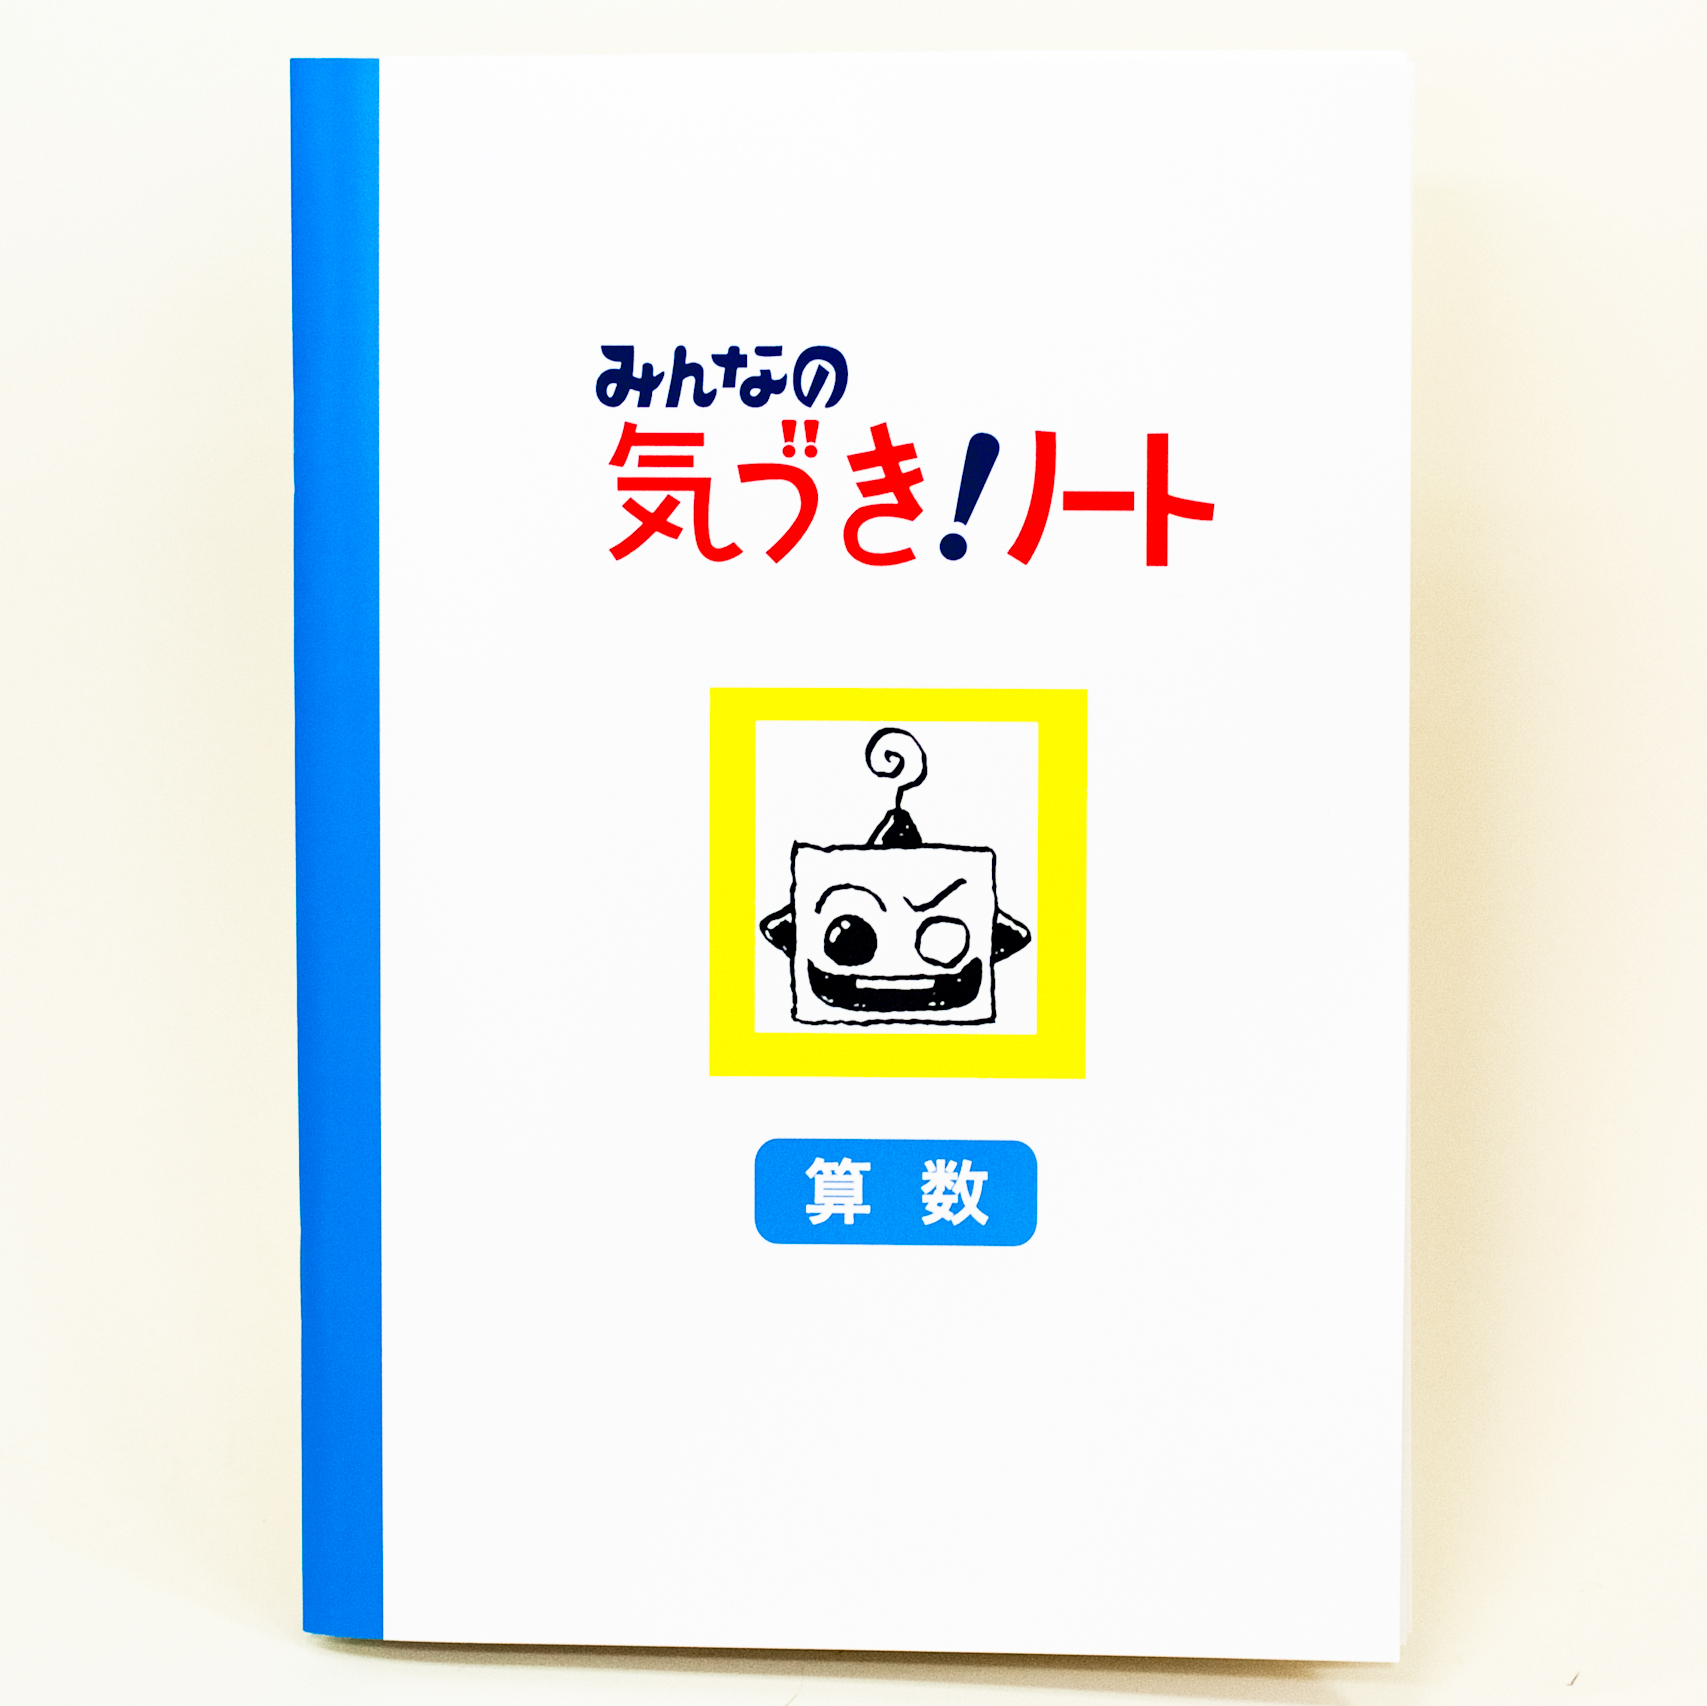 「澁澤  佳子 様」製作のオリジナルノート